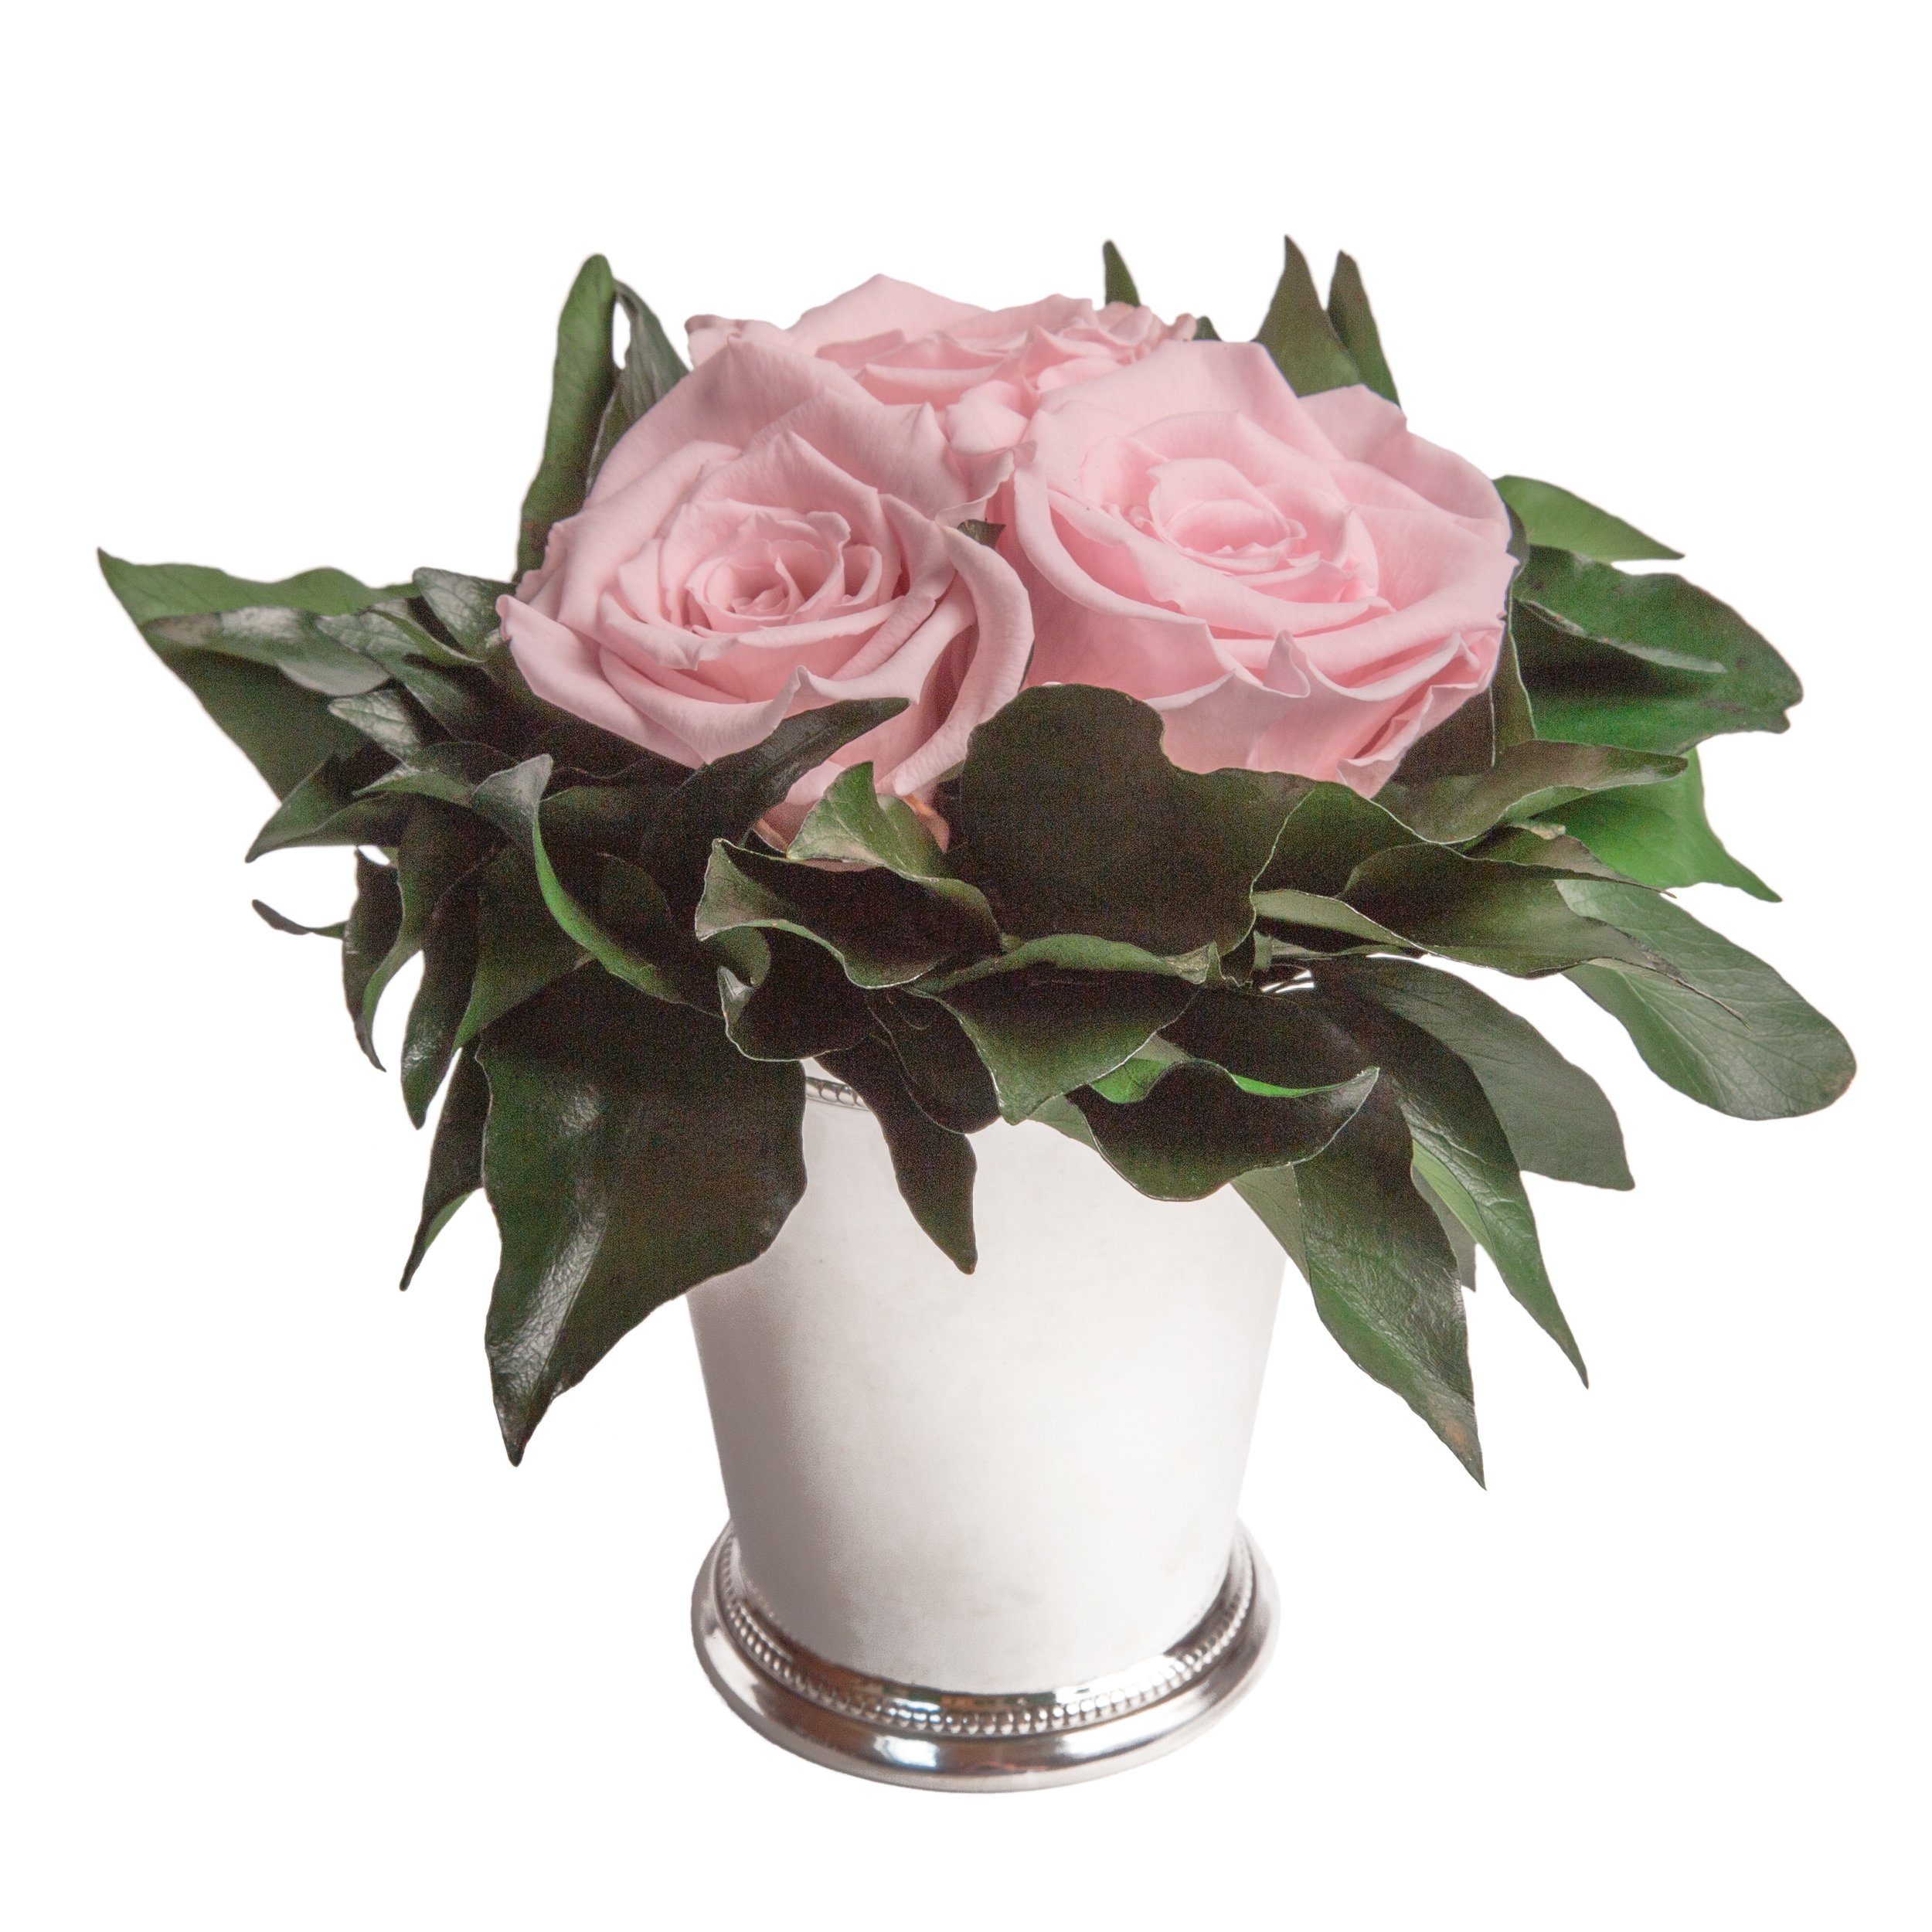 Kunstorchidee 3 Infinity Rosen silberfarbene Vase Wohnzimmer Deko Blumenstrauß Rose, ROSEMARIE SCHULZ Heidelberg, Höhe 15 cm, Rose haltbar bis zu 3 Jahre Rosa